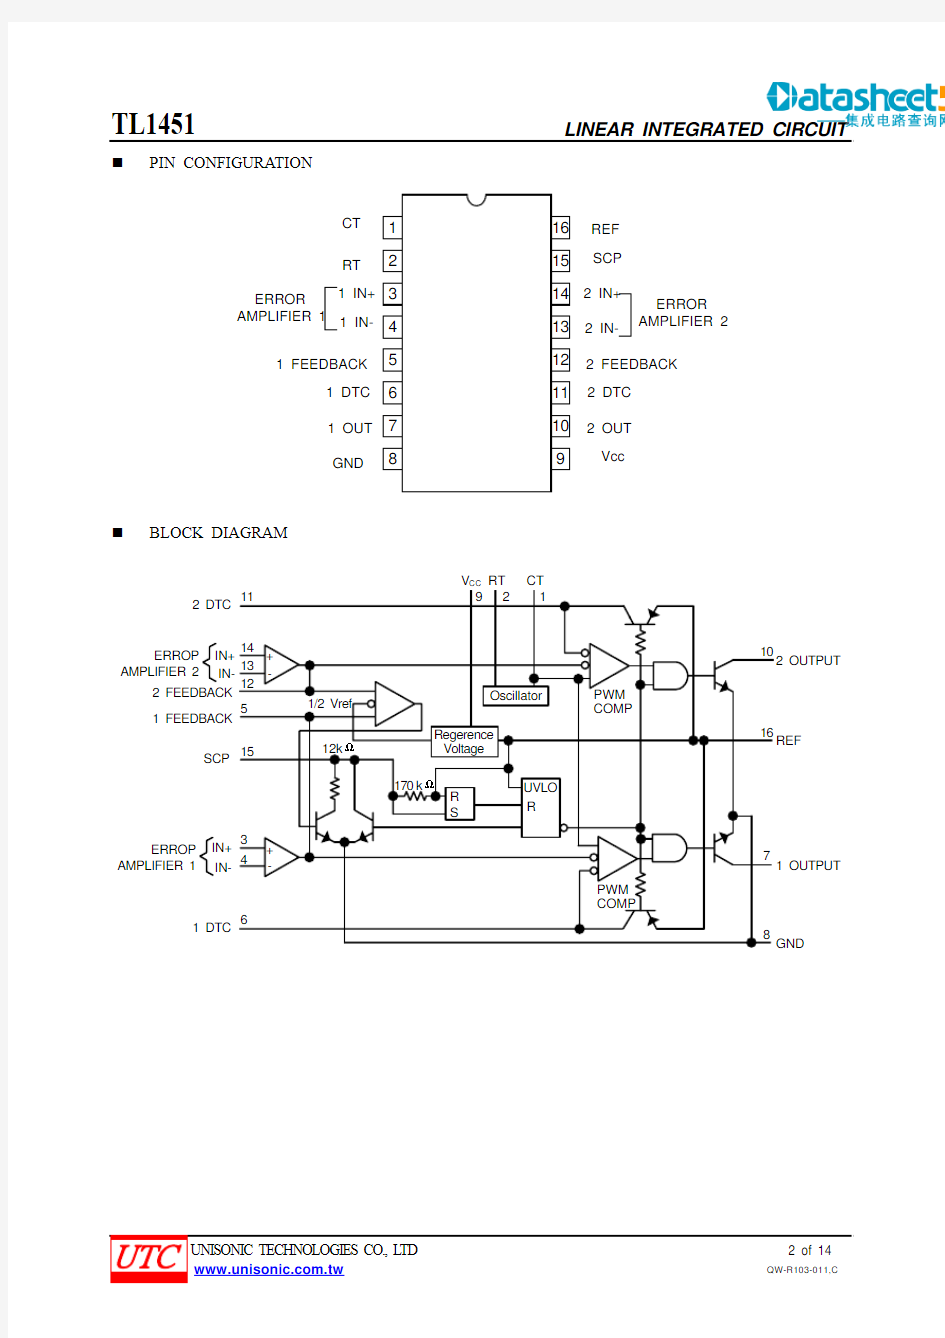 TL1451双脉冲宽度调制控制电路